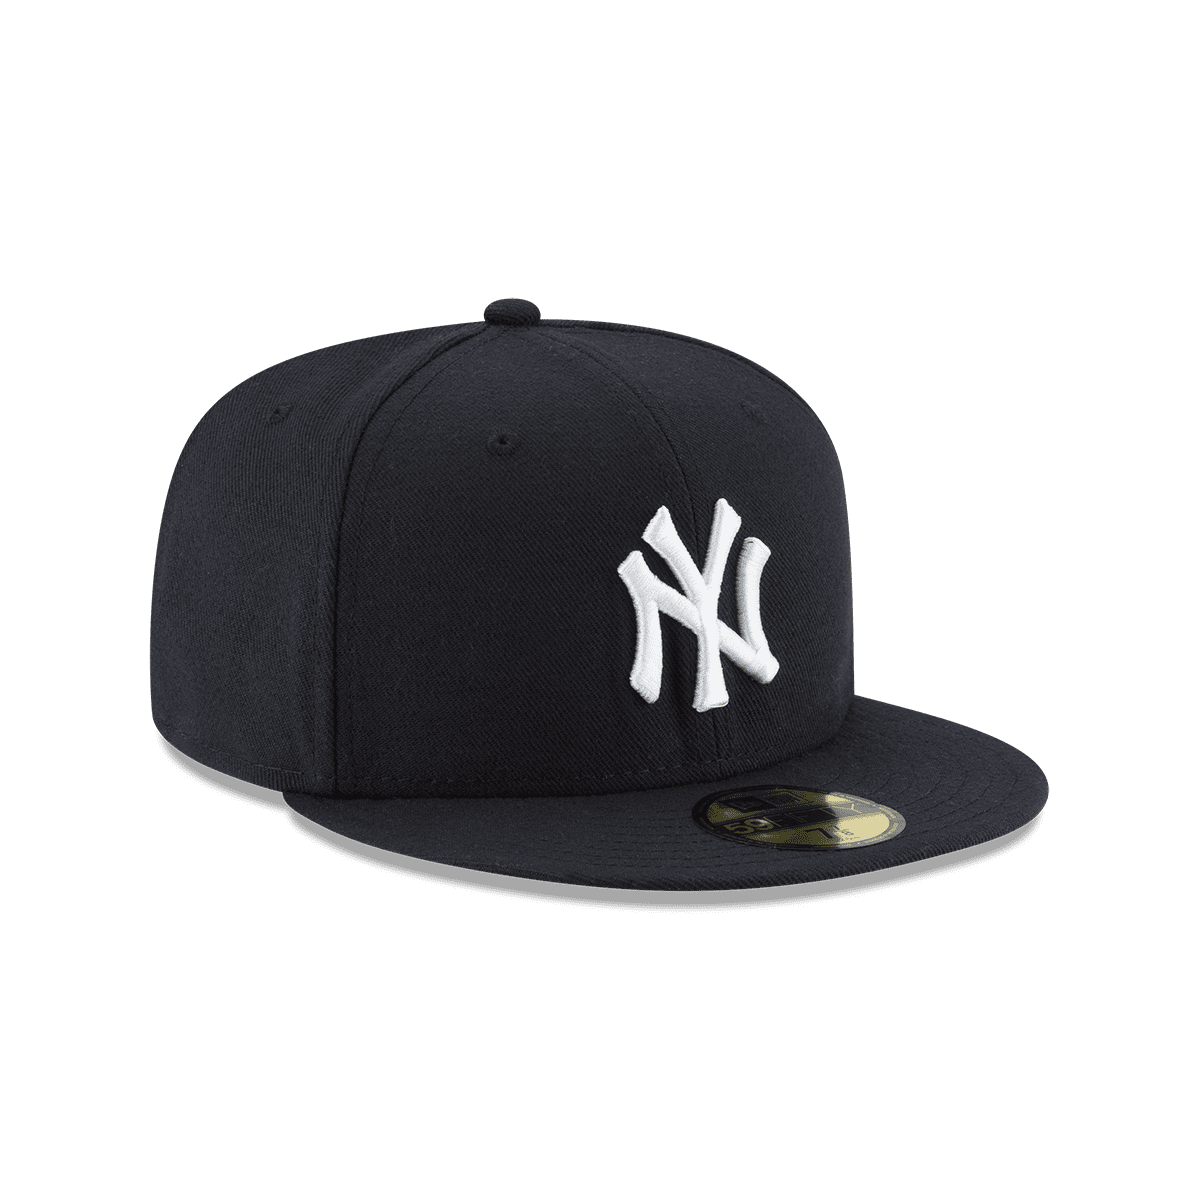 New Era Cap Colombia - Cerrada, plana + los #Yankees. Todo lo que una cap  clásica necesita, ¿ya la tienes? 🤔 #NewEraCapCo #59FIFTY